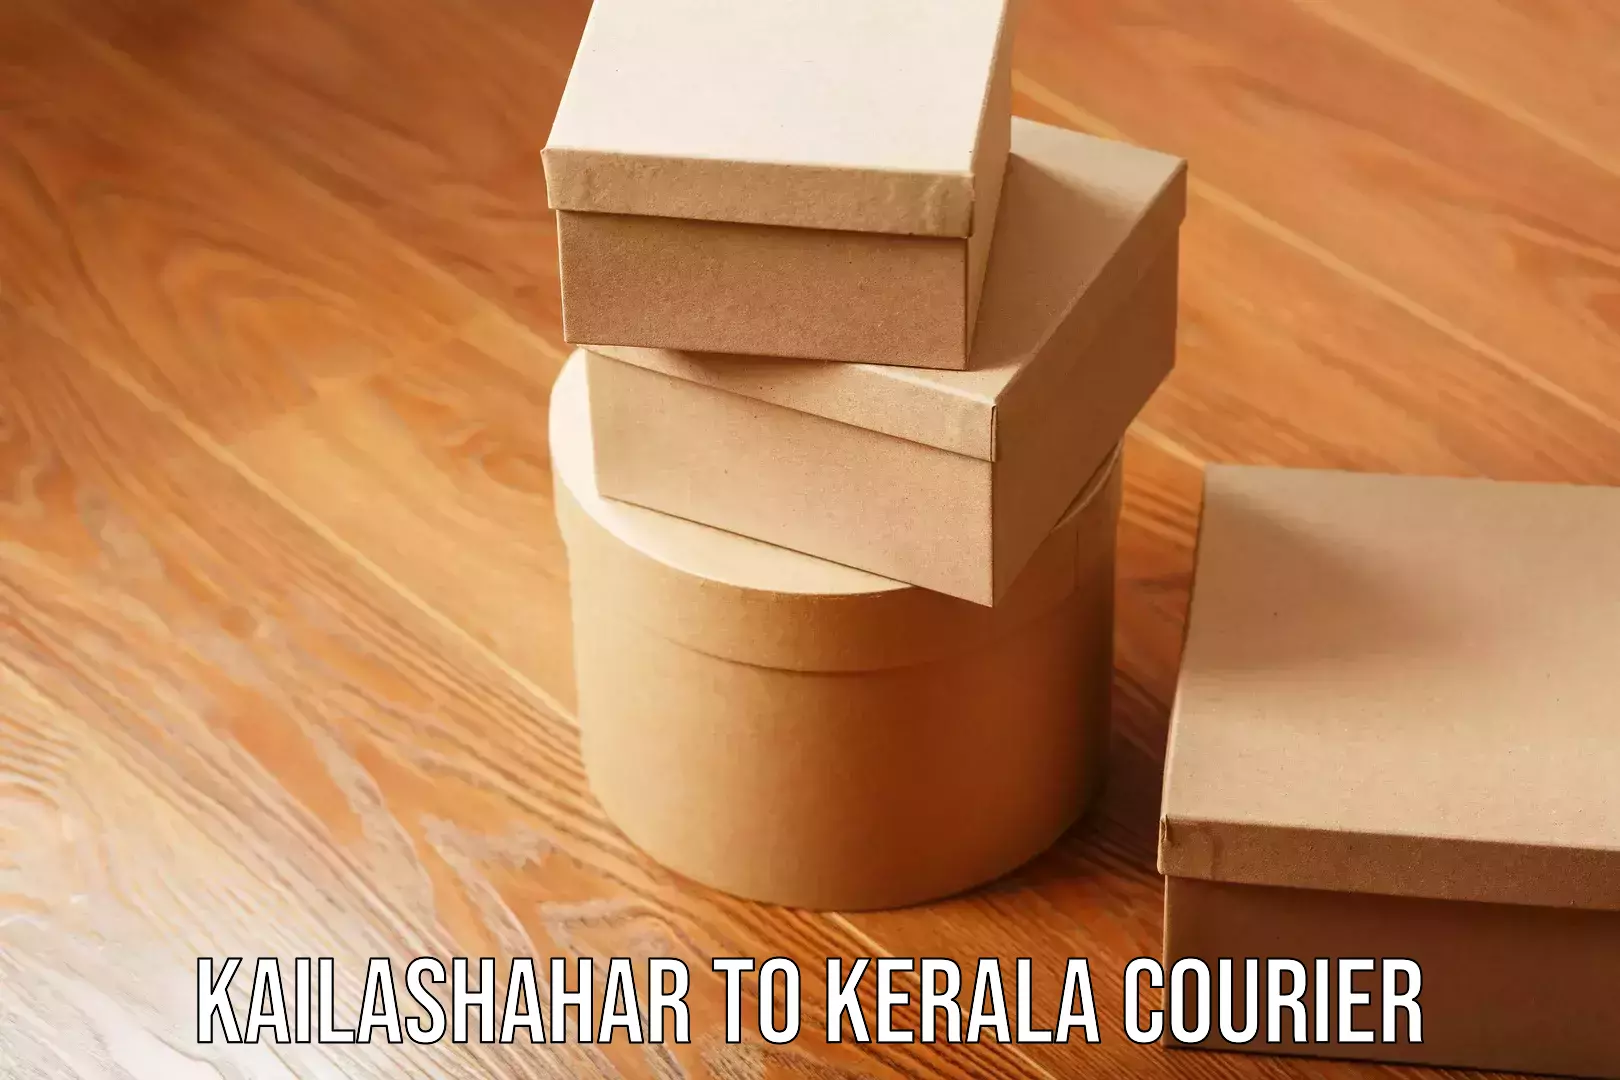 Trackable shipping service Kailashahar to Kerala